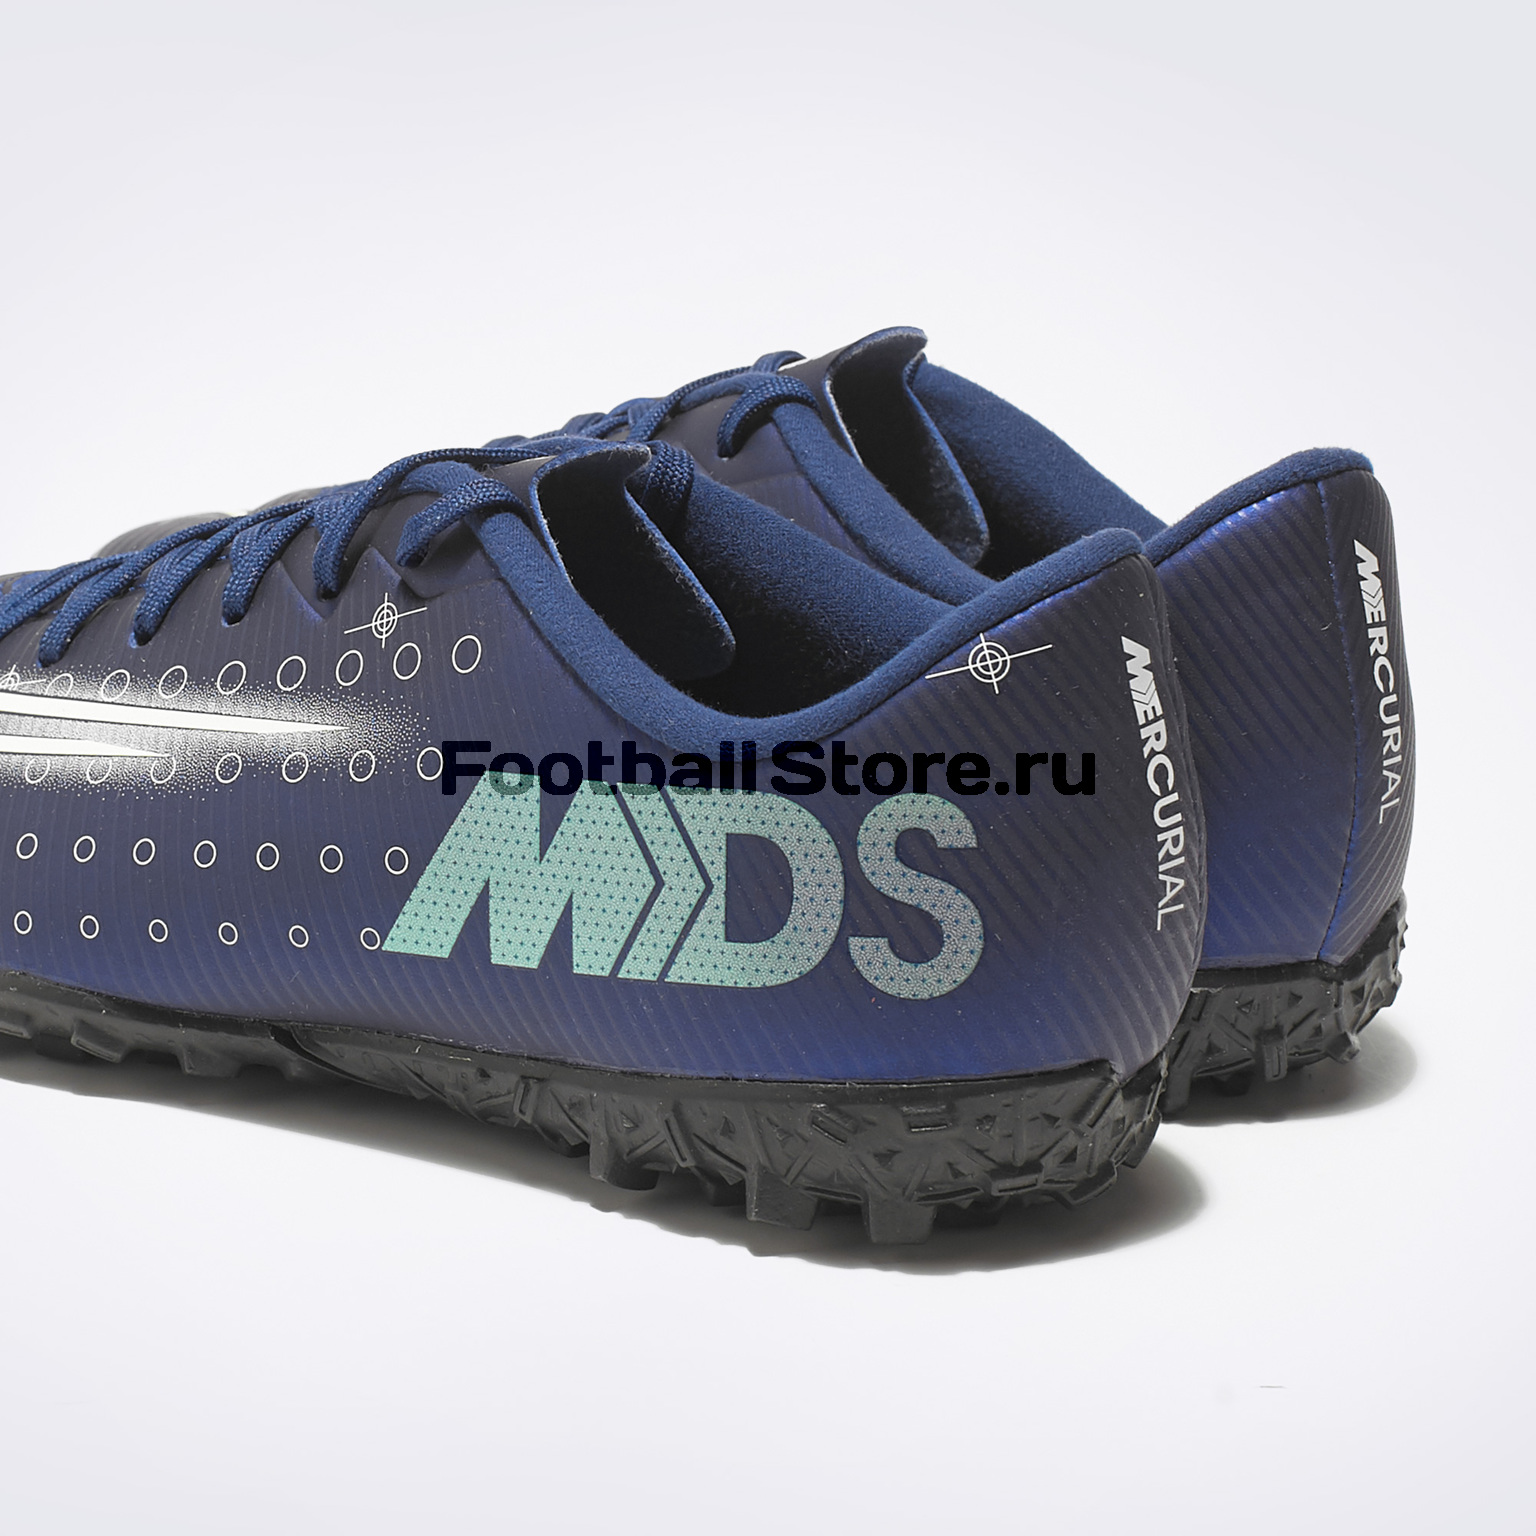 Шиповки детские Nike Vapor 13 Academy MDS TF CJ1178-401